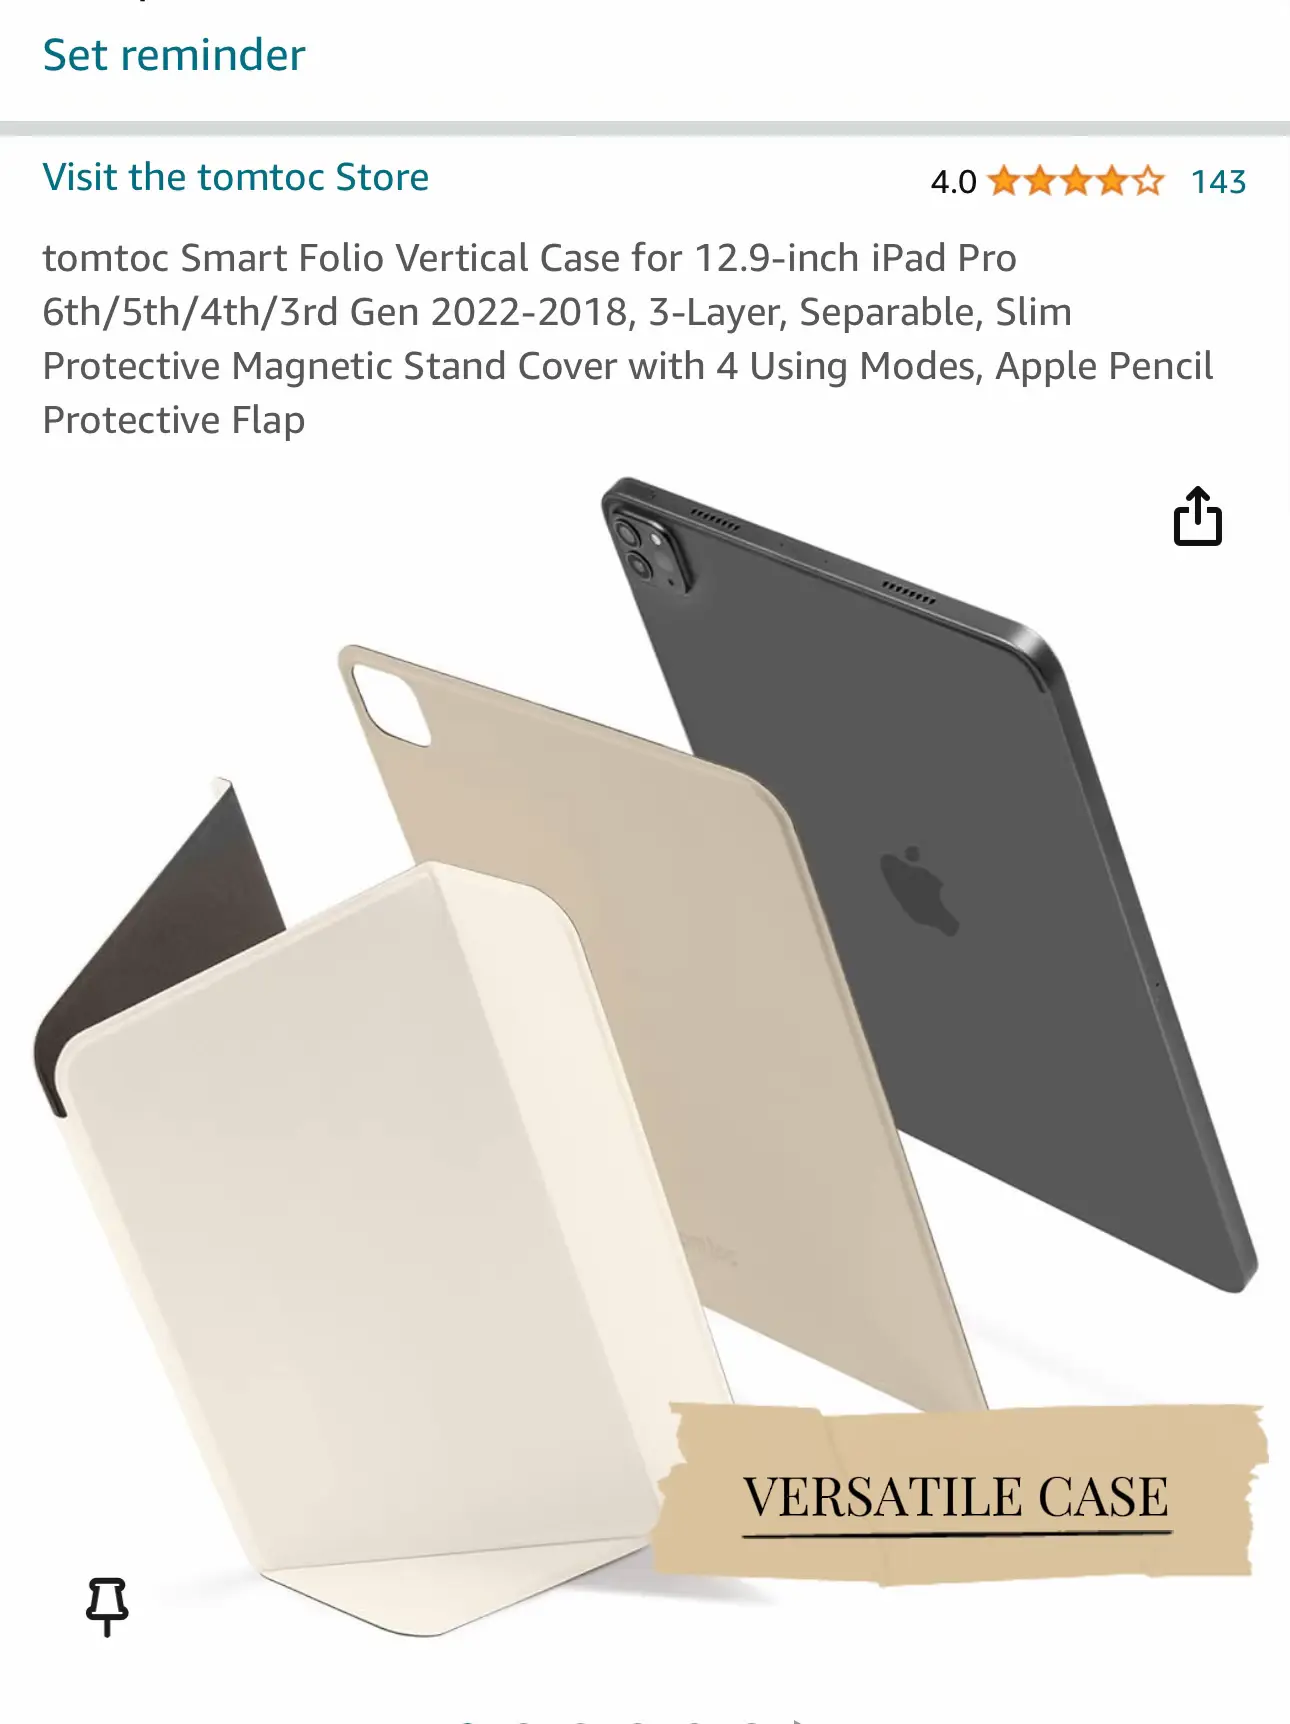 Évaluation du protecteur d'écran Paperlike pour iPad - Blogue Best Buy